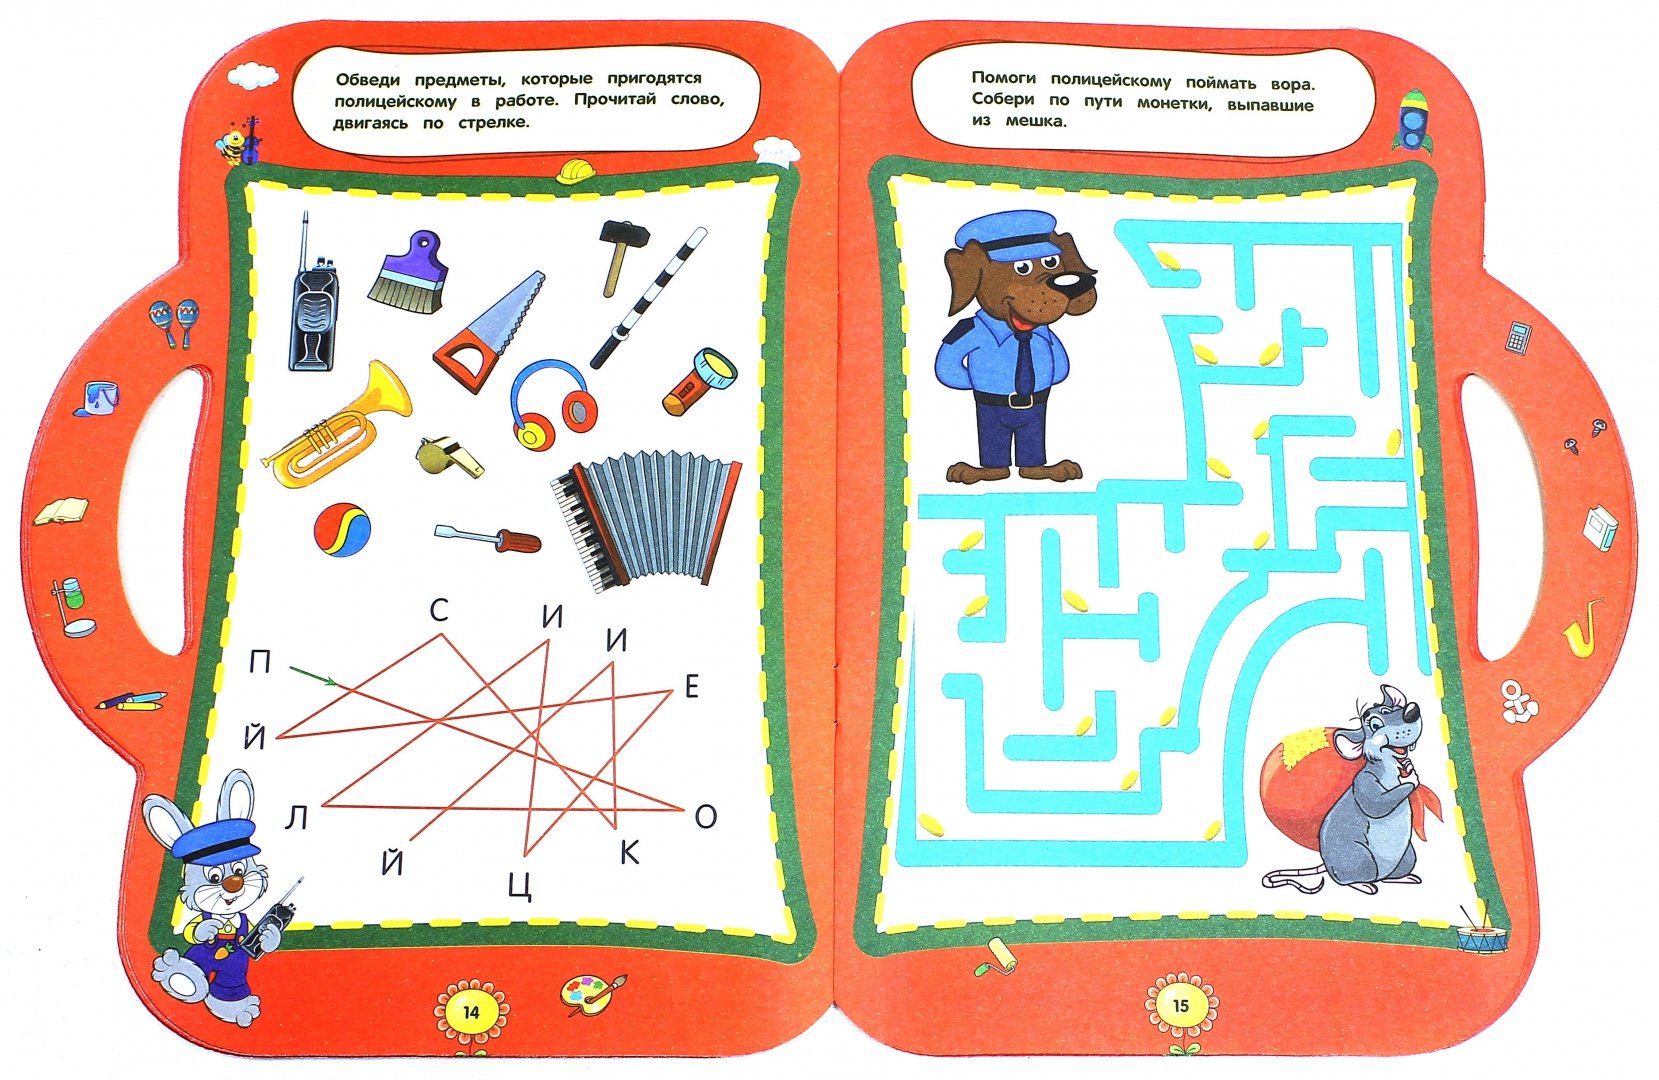 Игры познавательные 6 7. Интеллектуальные задания для детей. Развивающие игры для 6 лет. Развивающие книги для детей 6-7 лет. Интеллектуальные задания для детей 6-7 лет.